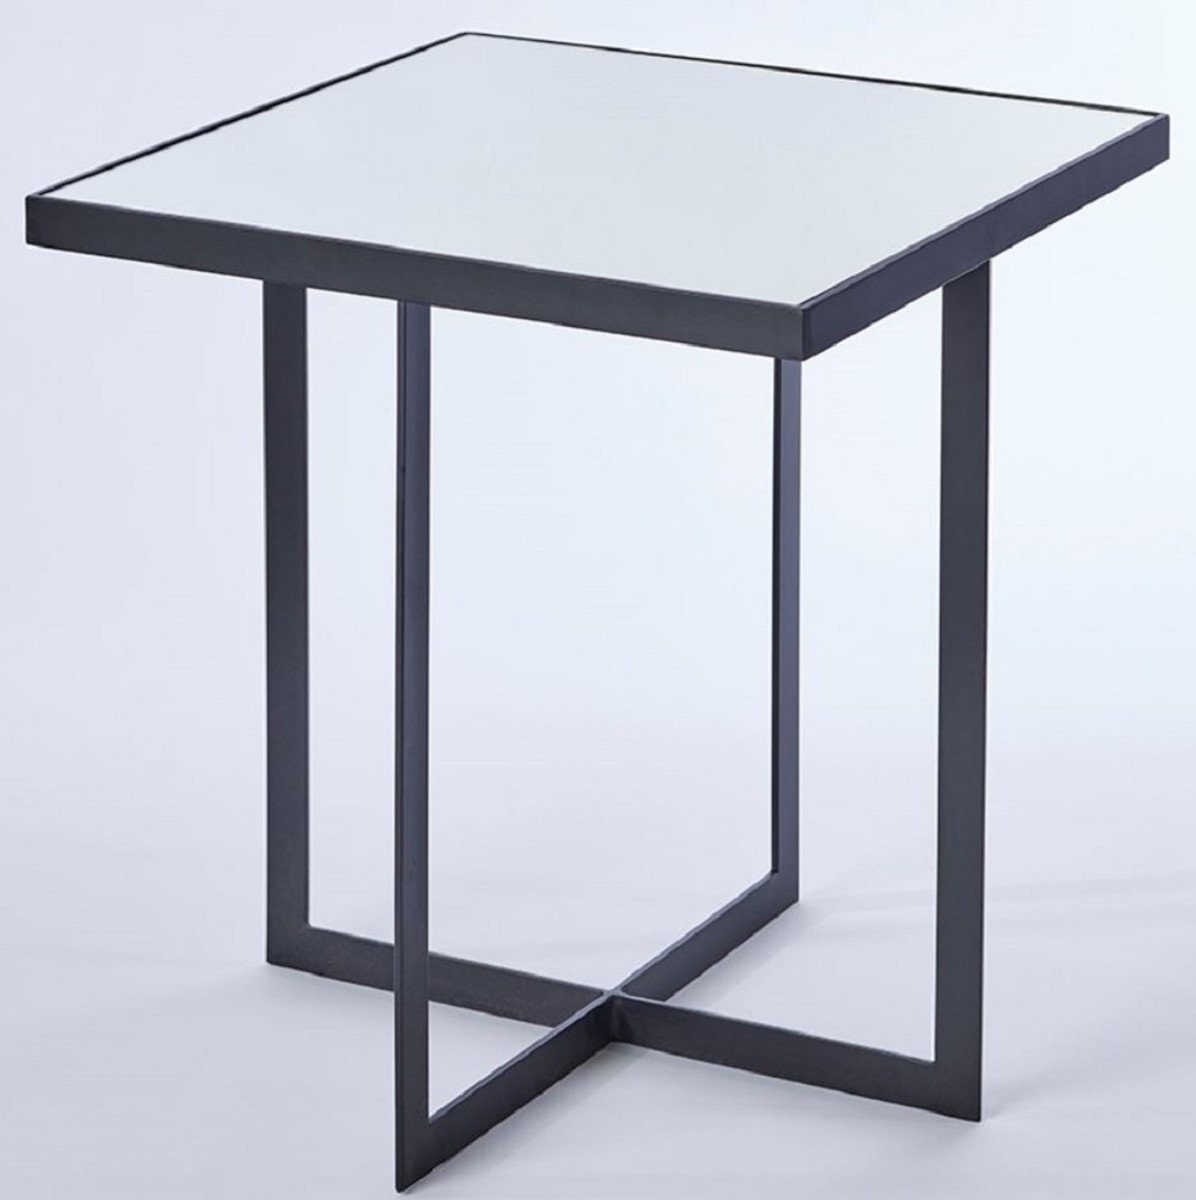 Casa Padrino Beistelltisch Luxus Beistelltisch Schwarz 51 x 51 x H. 55 cm - Metall Tisch mit Spiegelglas Tischplatte - Luxus Möbel